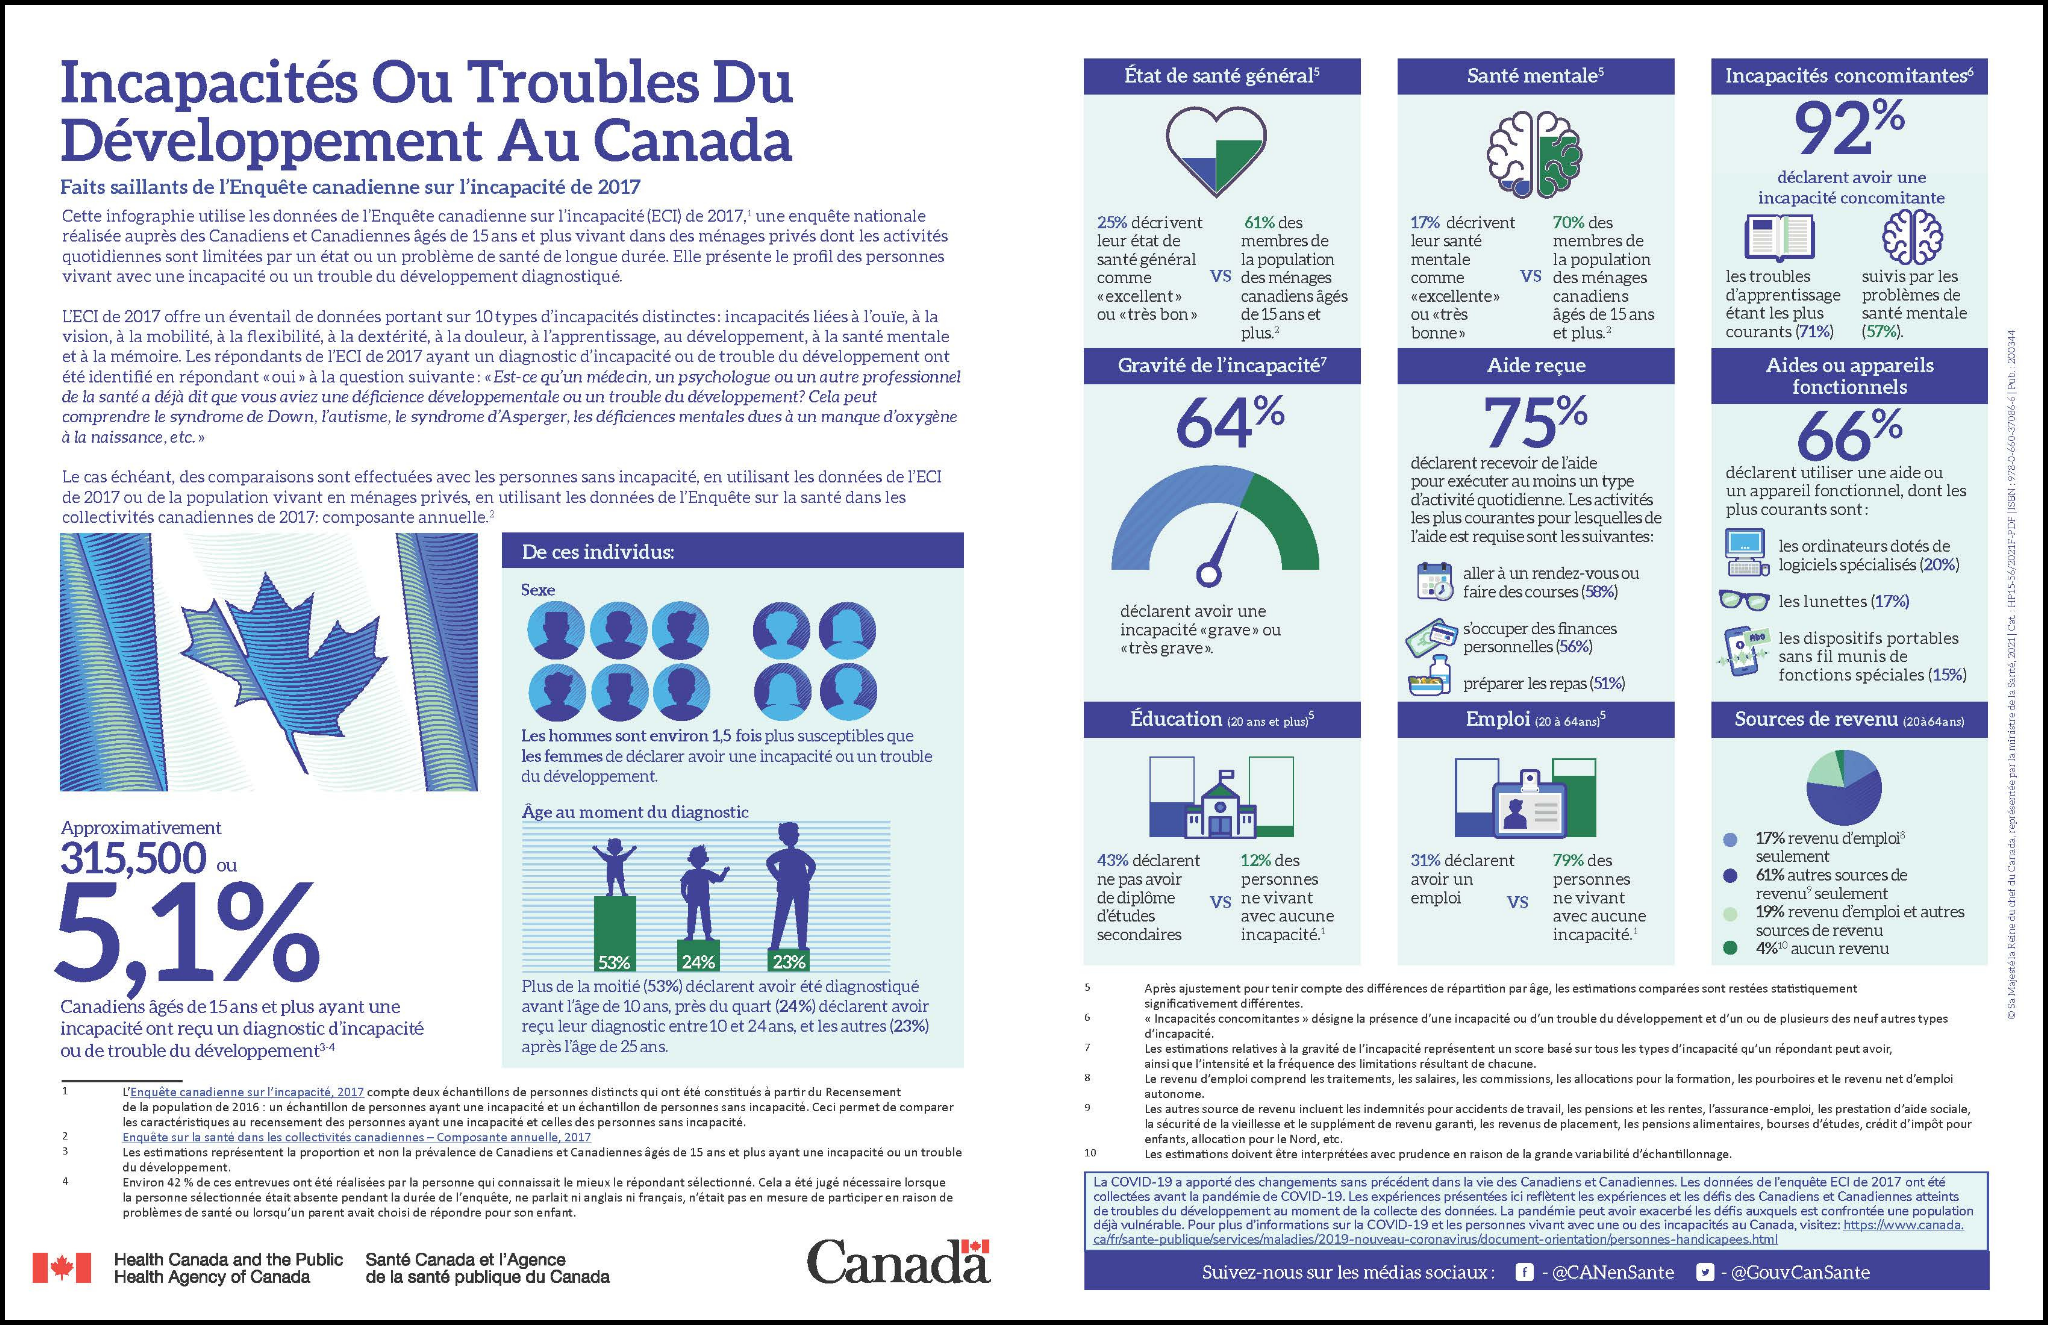 Infographie des Incapacités ou troubles du développement au Canada , par l’Agence de la santé publique du Canada.